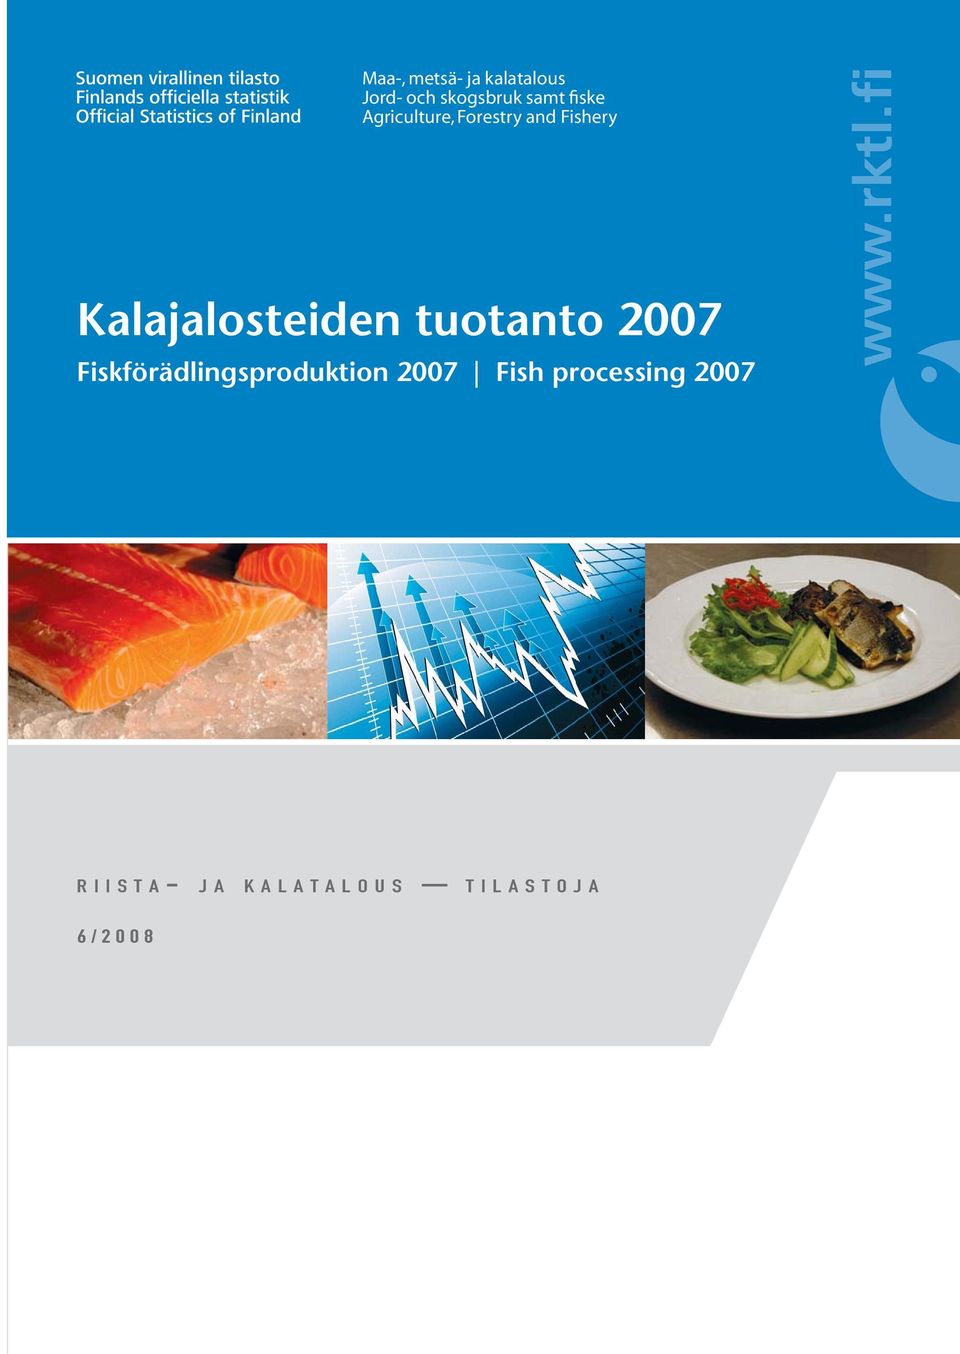 Kalajalosteiden tuotanto 2007